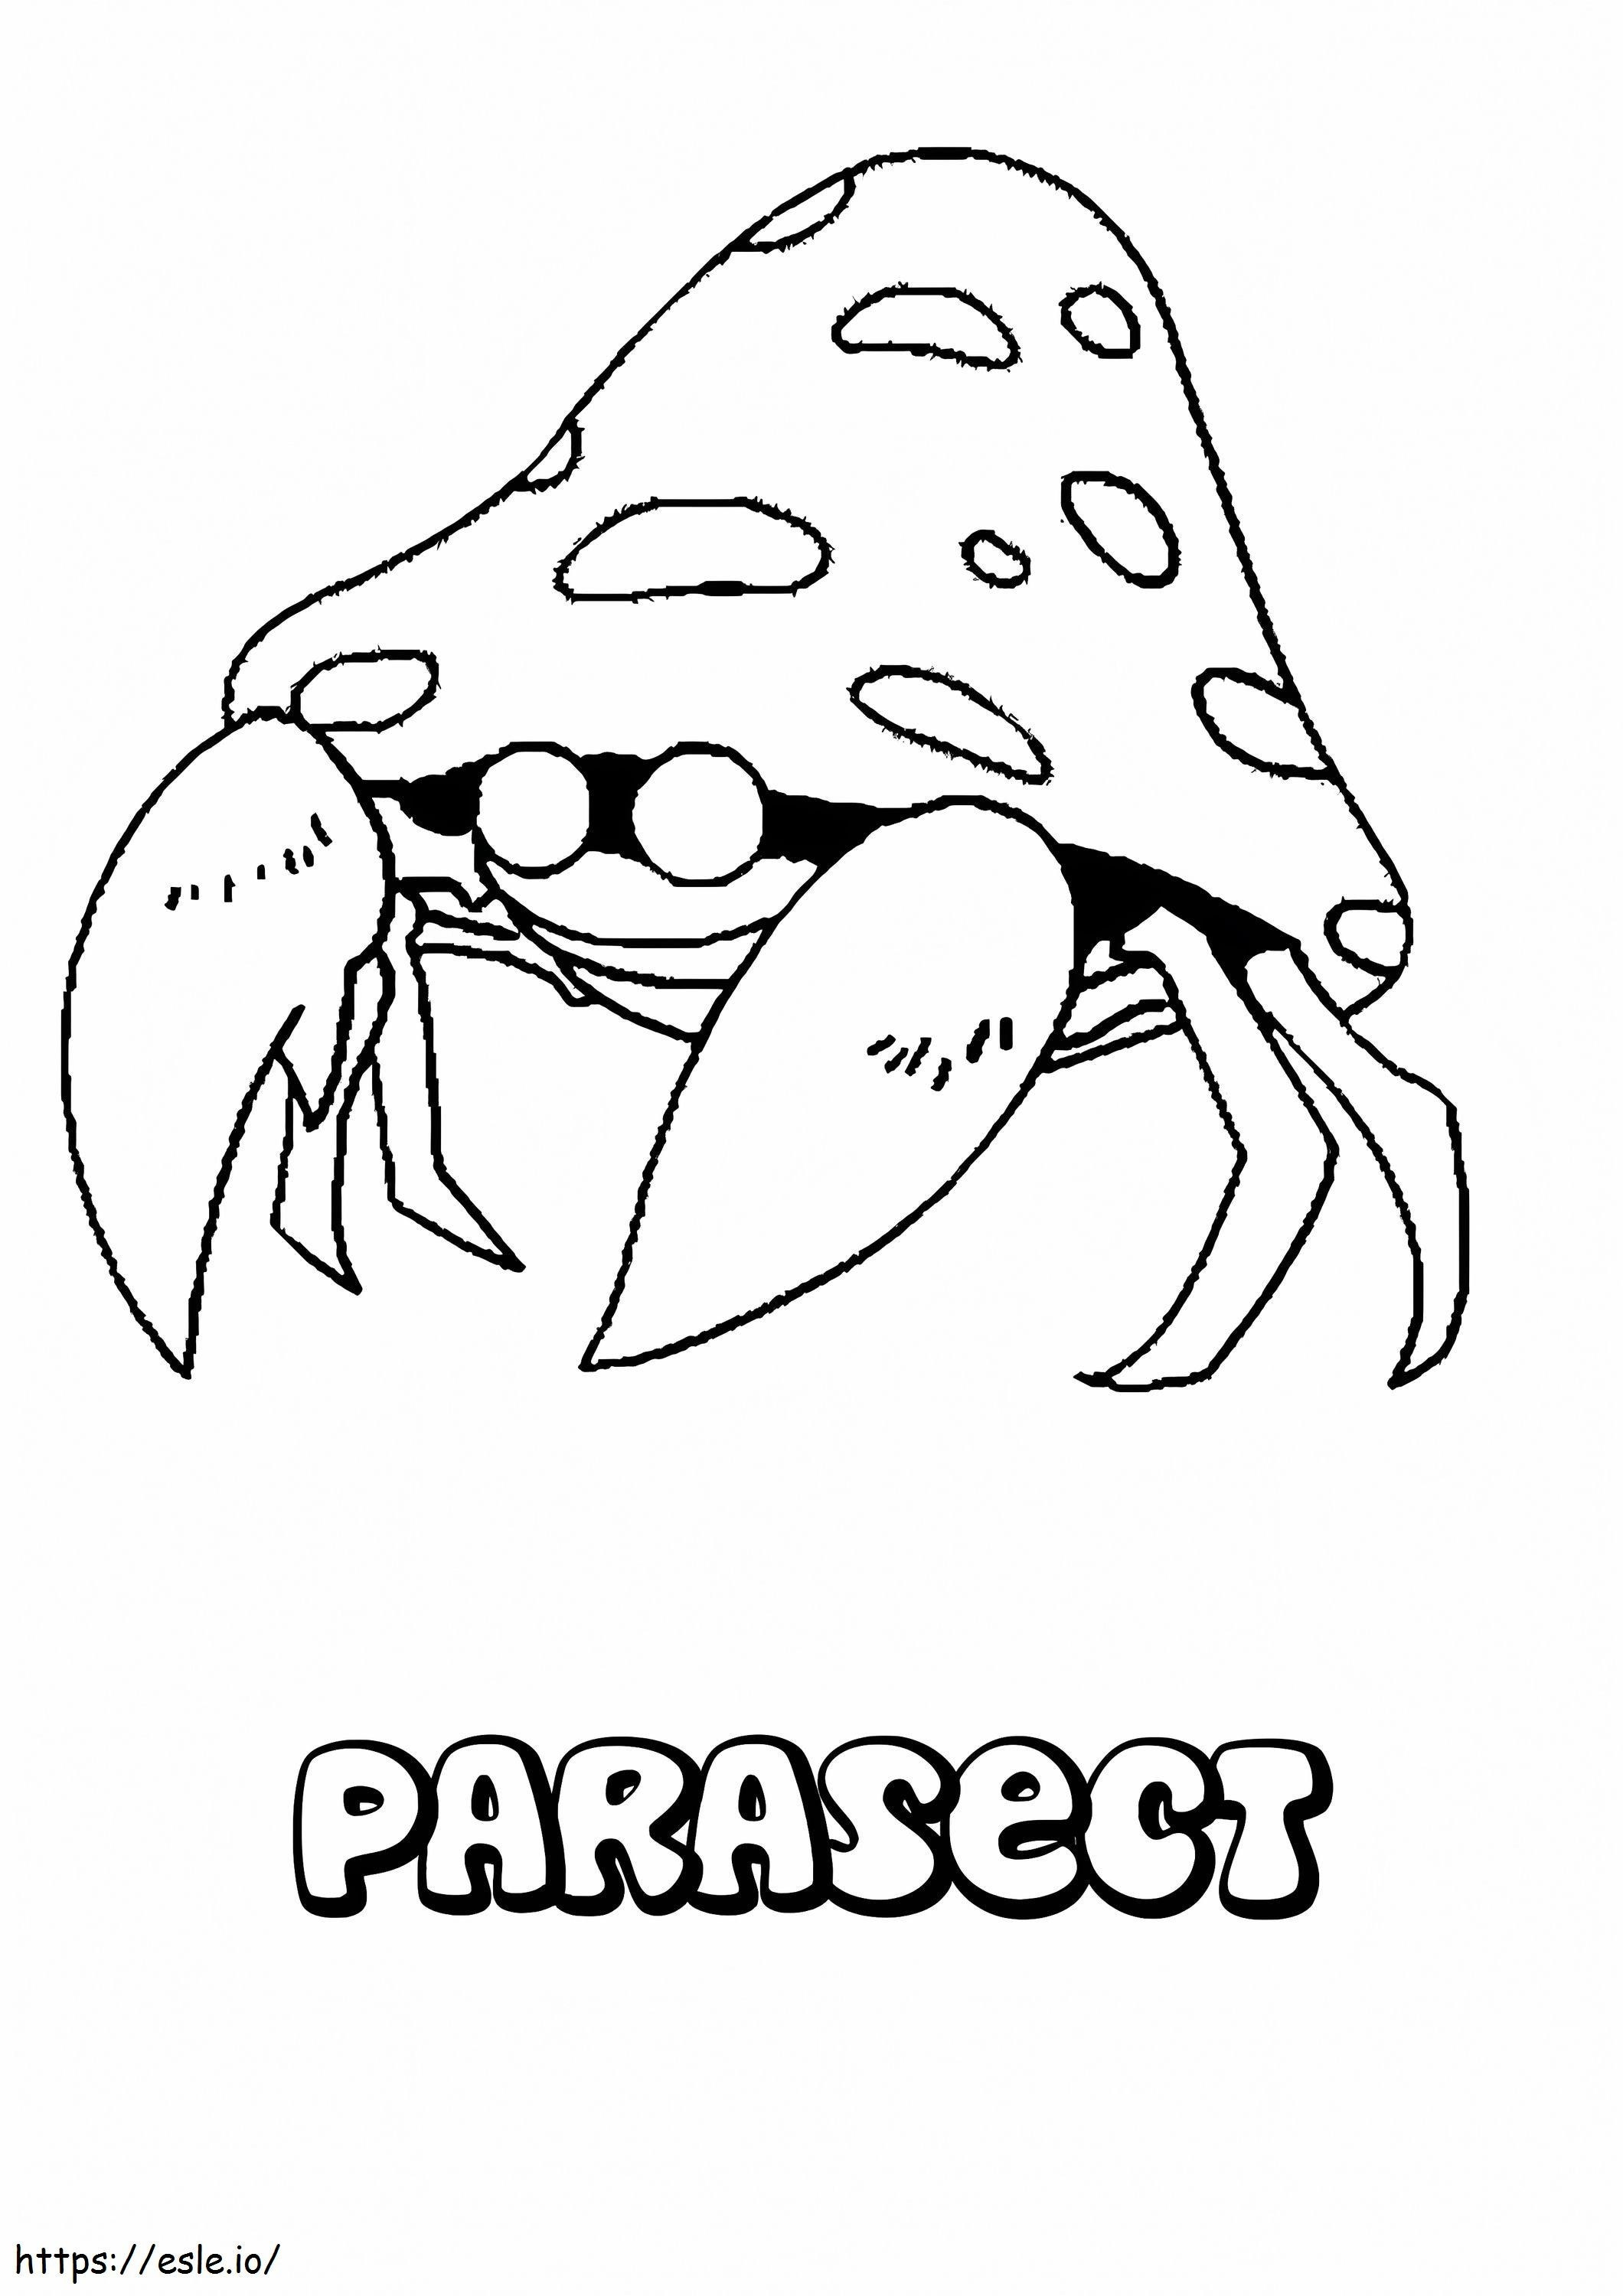 Coloriage Pokémon Parasecte Gen 1 à imprimer dessin